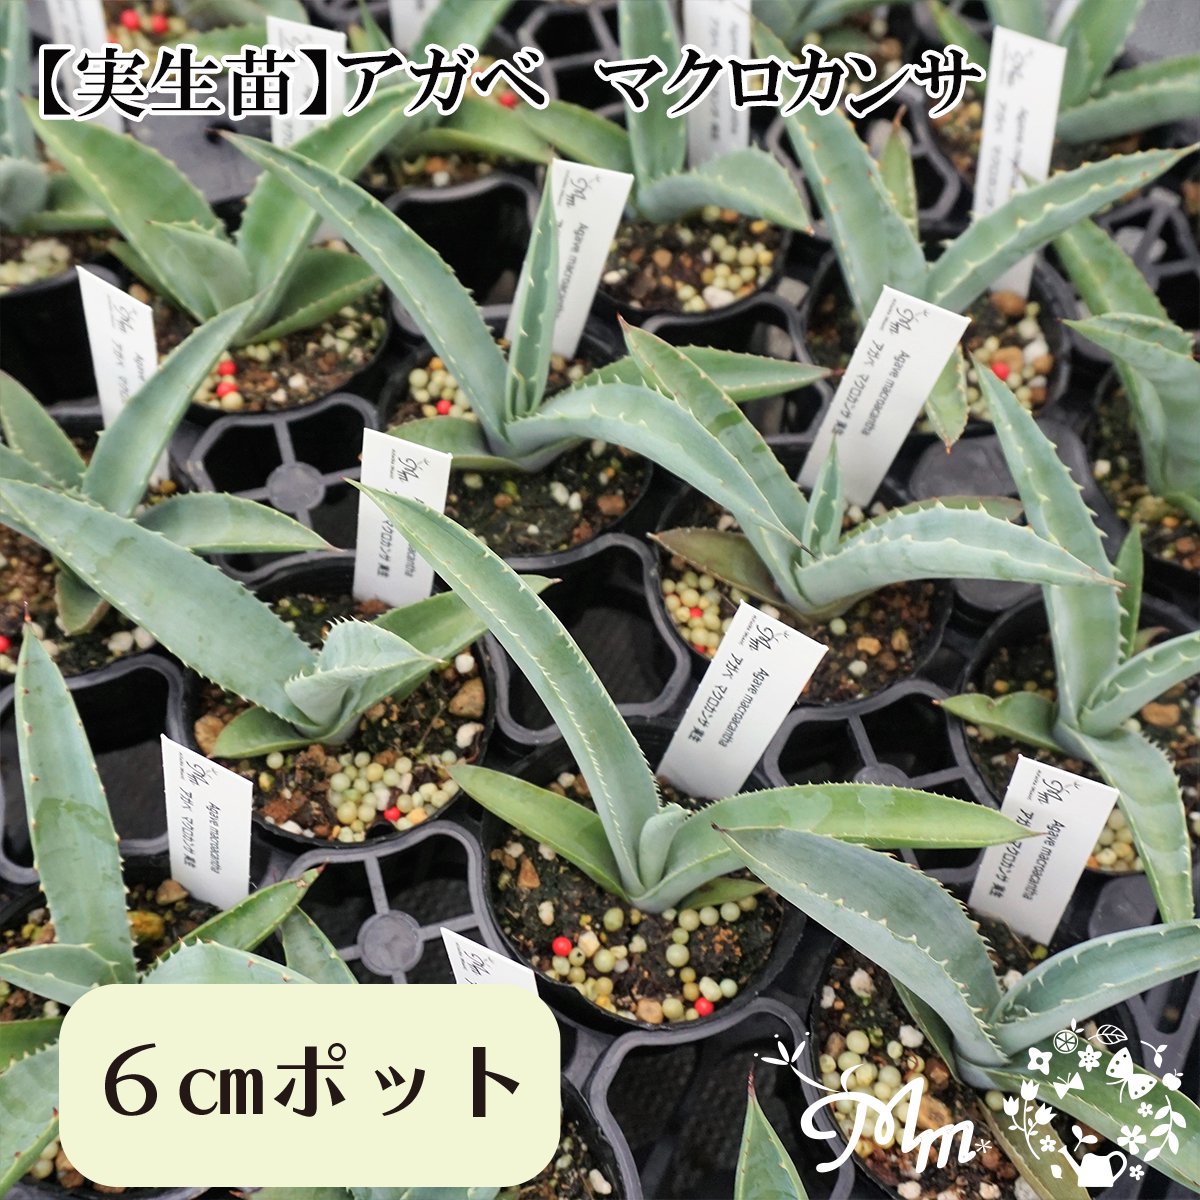 【実生苗(実生株)】Agave macroacantha(アガベ マクロカンサ)6㎝ポット苗